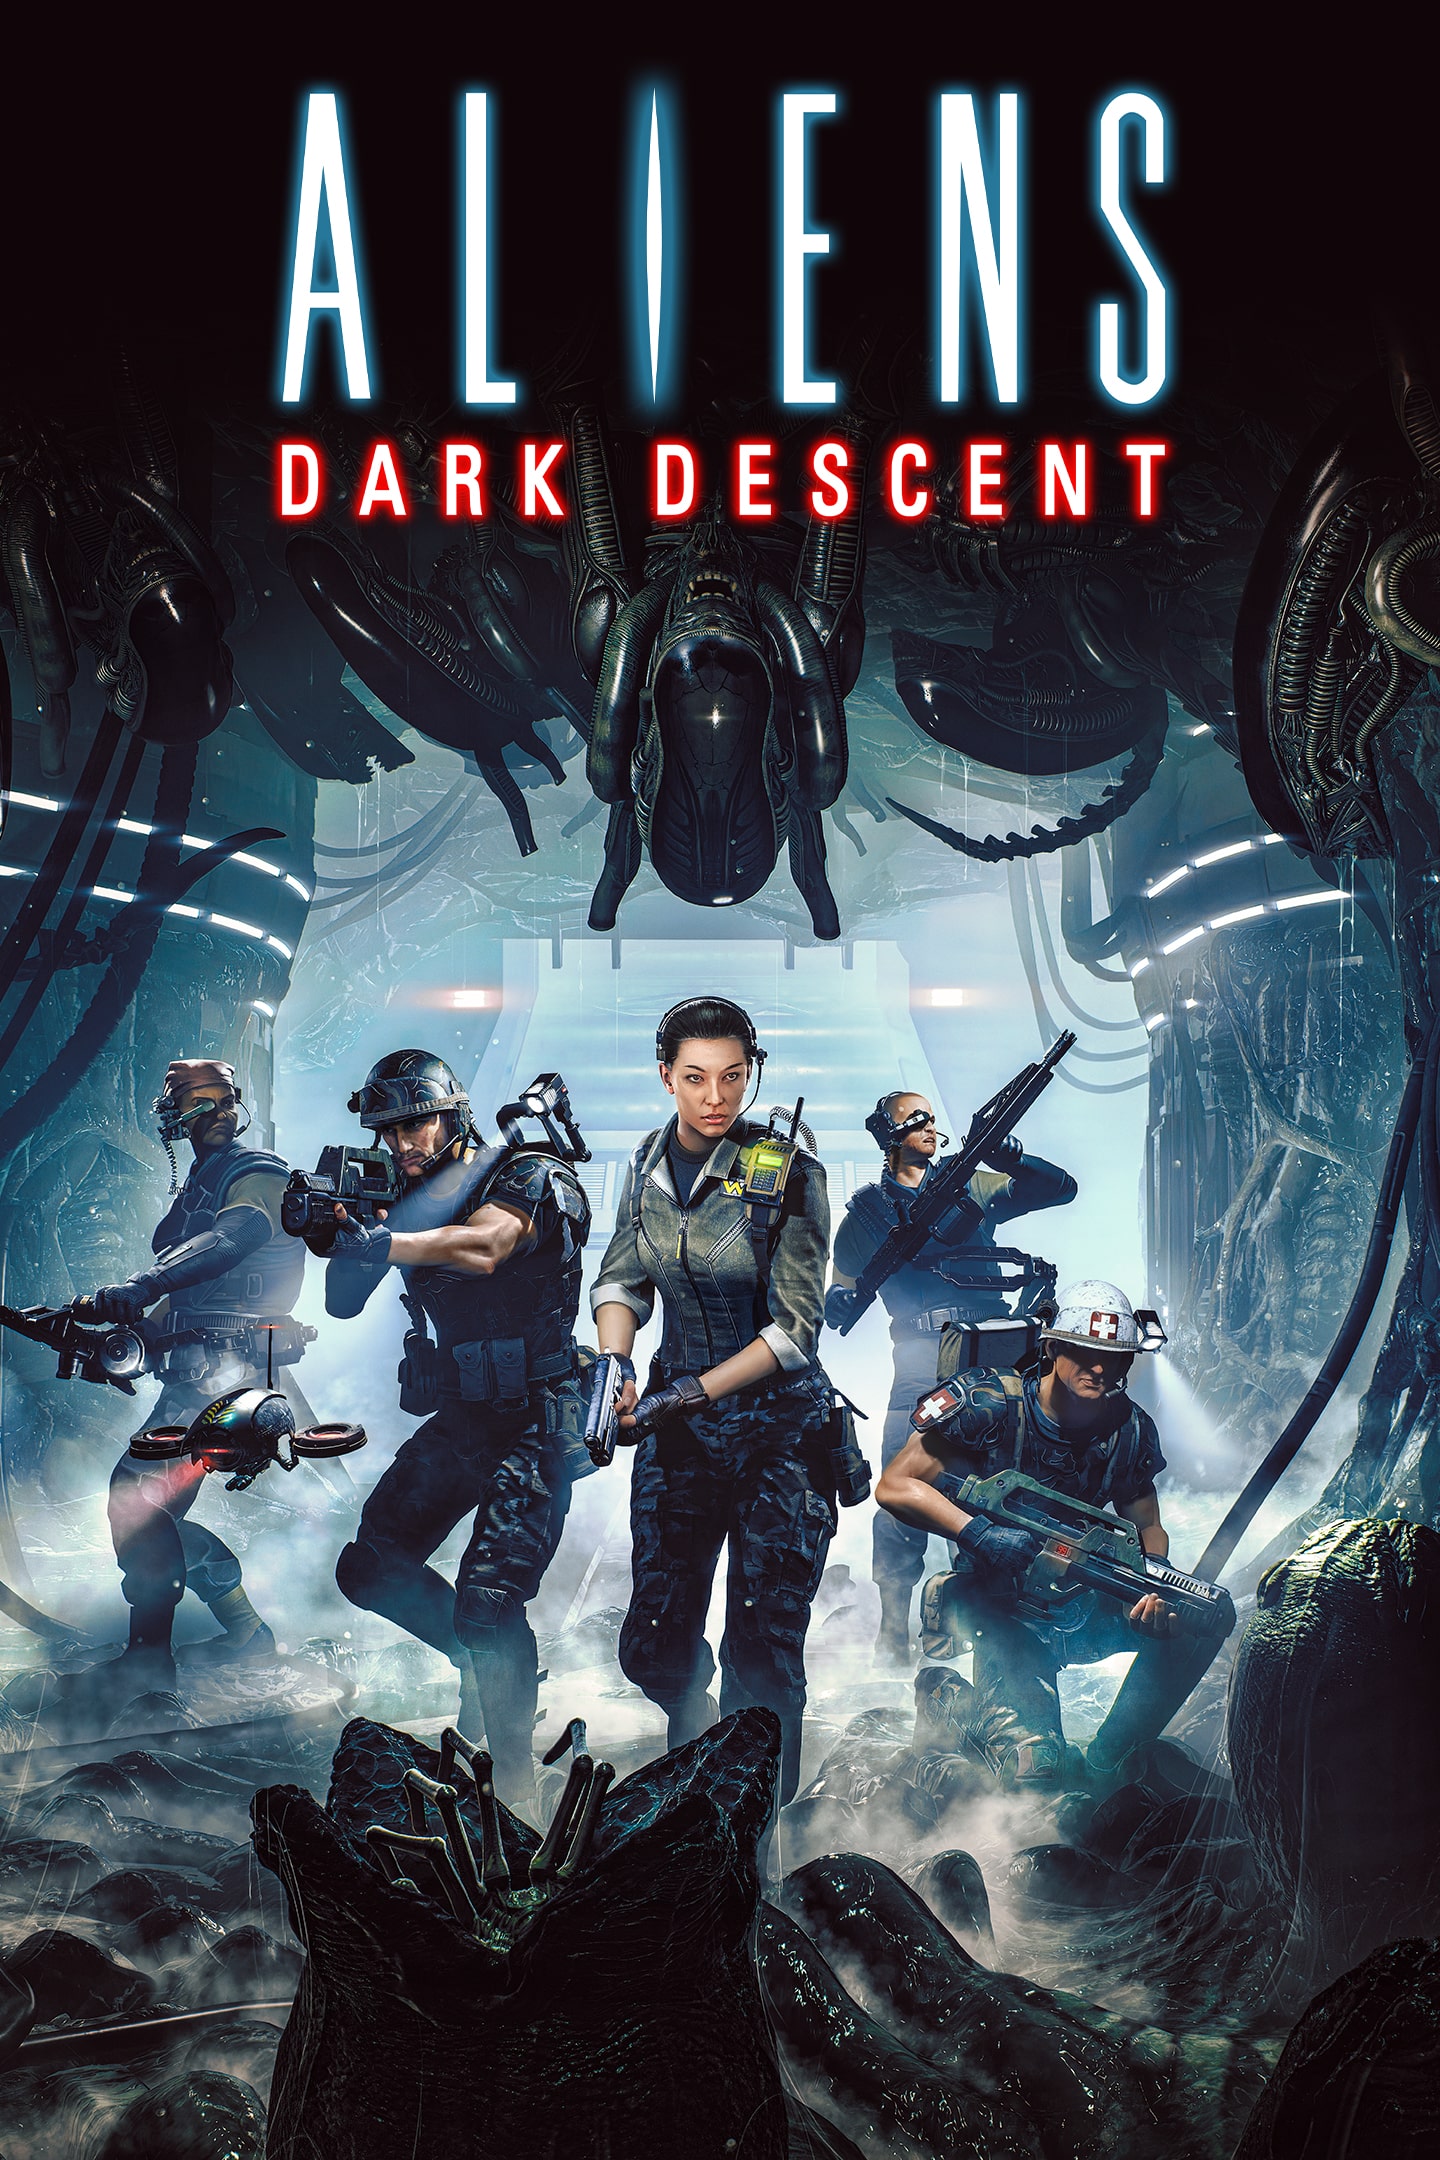 jaquette du jeu vidéo Aliens: Dark Descent